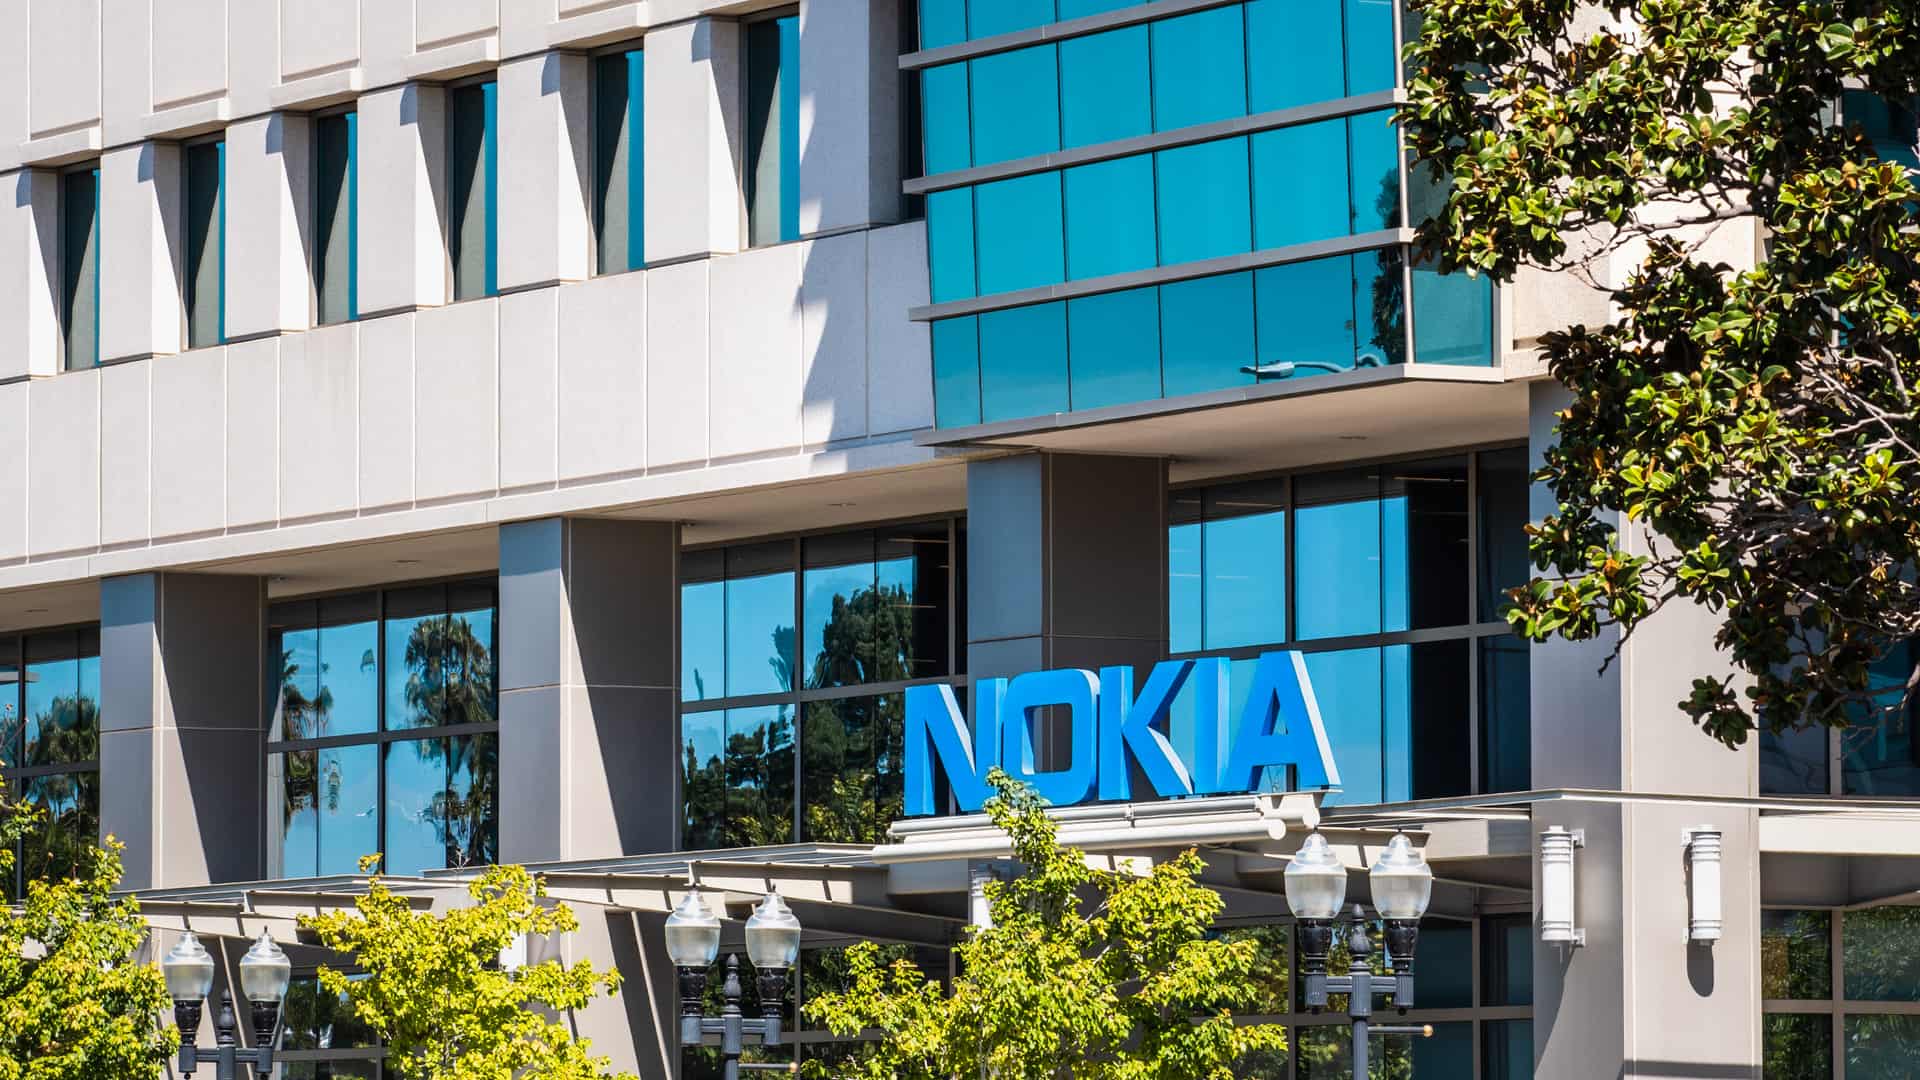 El nuevo smartphone de Nokia: Donde comprar el Nokia 6